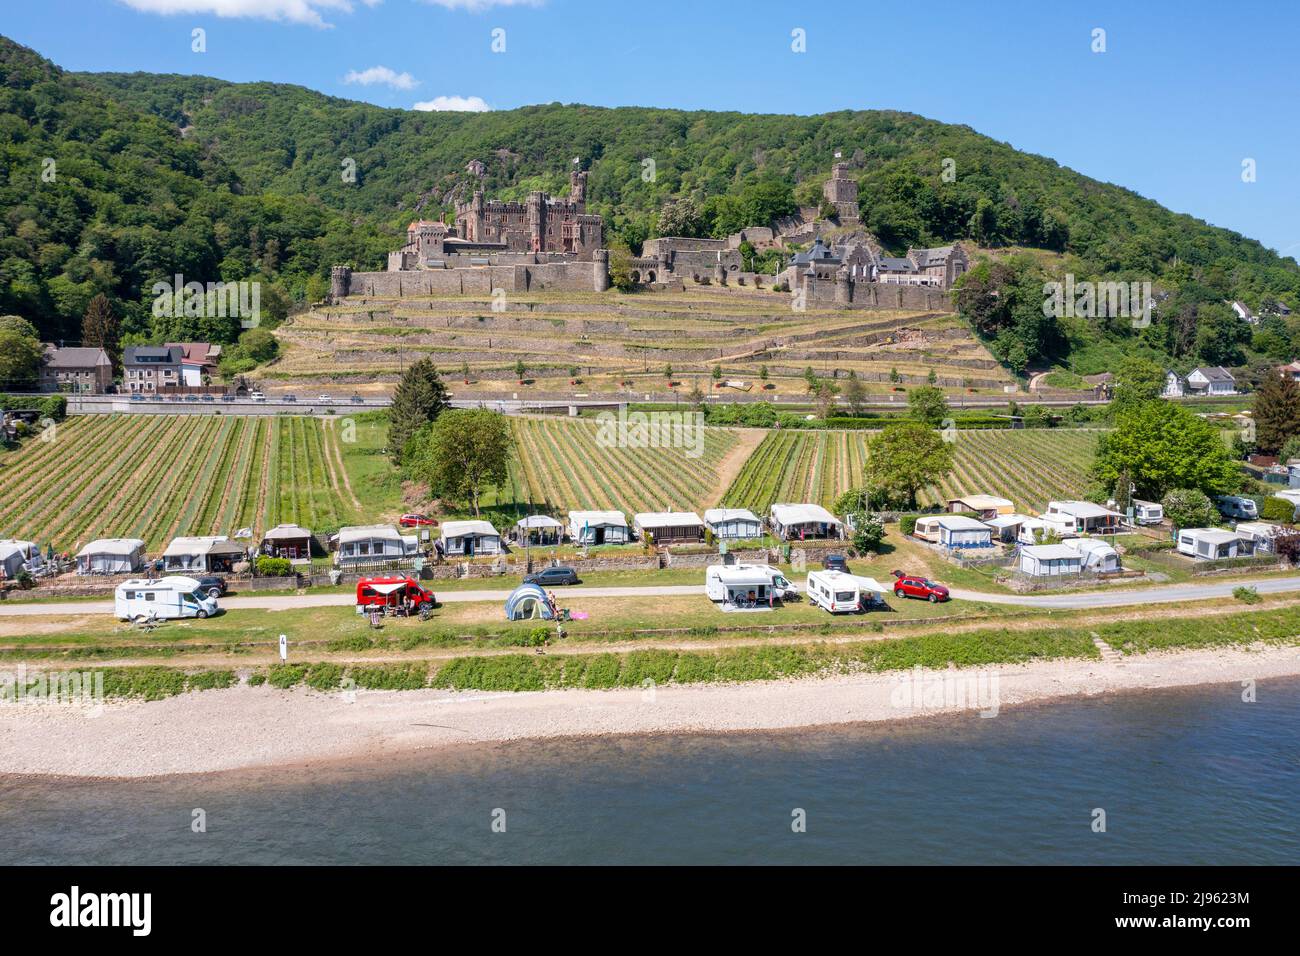 Burg Reichenstein,  Trechtingshausen, Rhein Valley, Germany Stock Photo